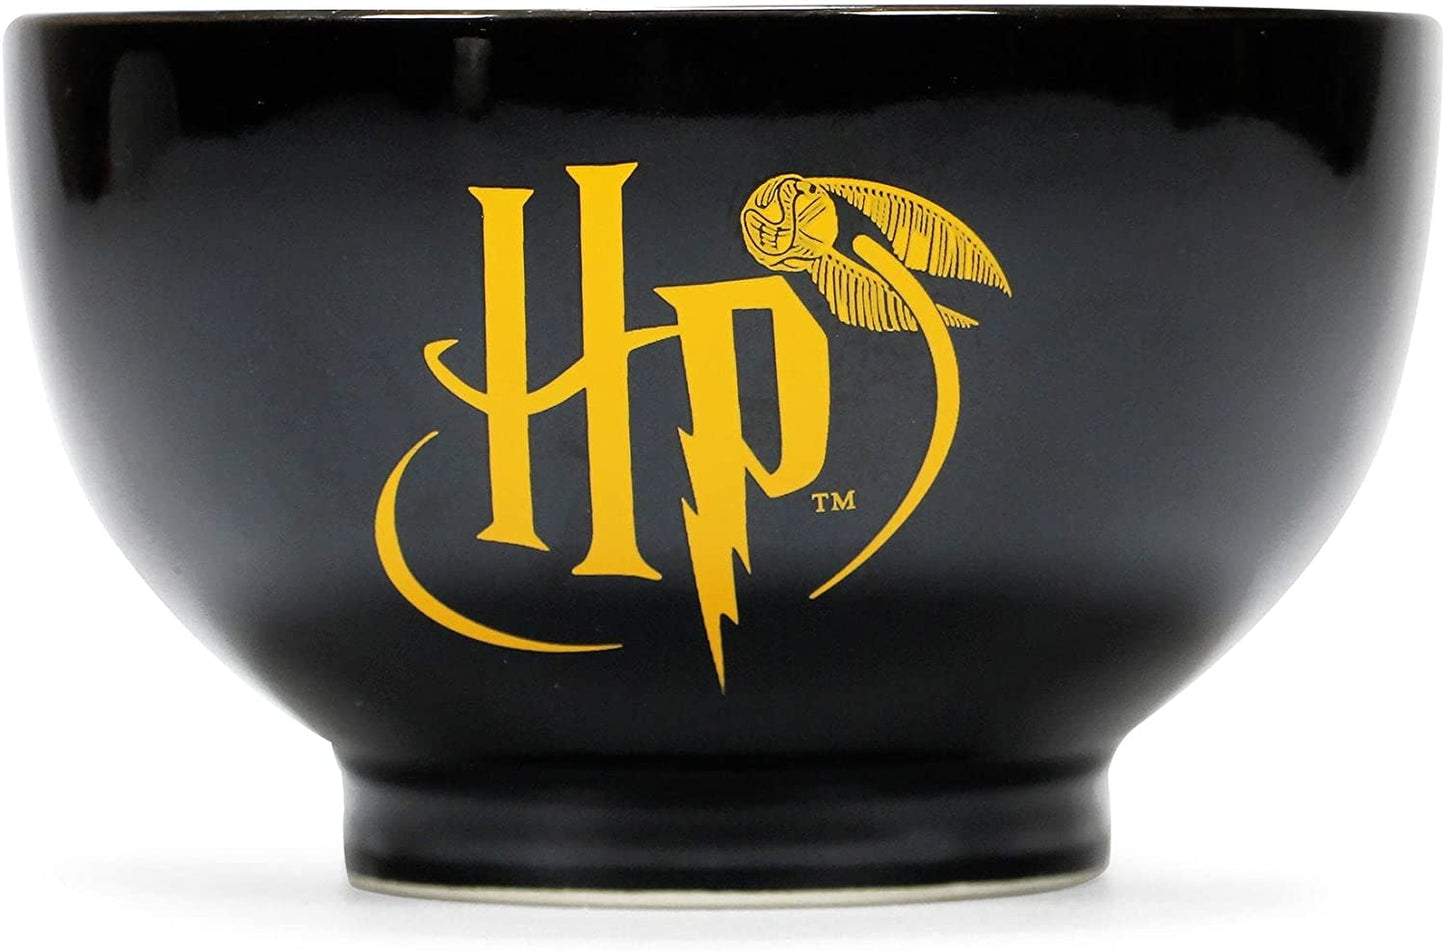 Harry Potter Bowl - Hogwarts